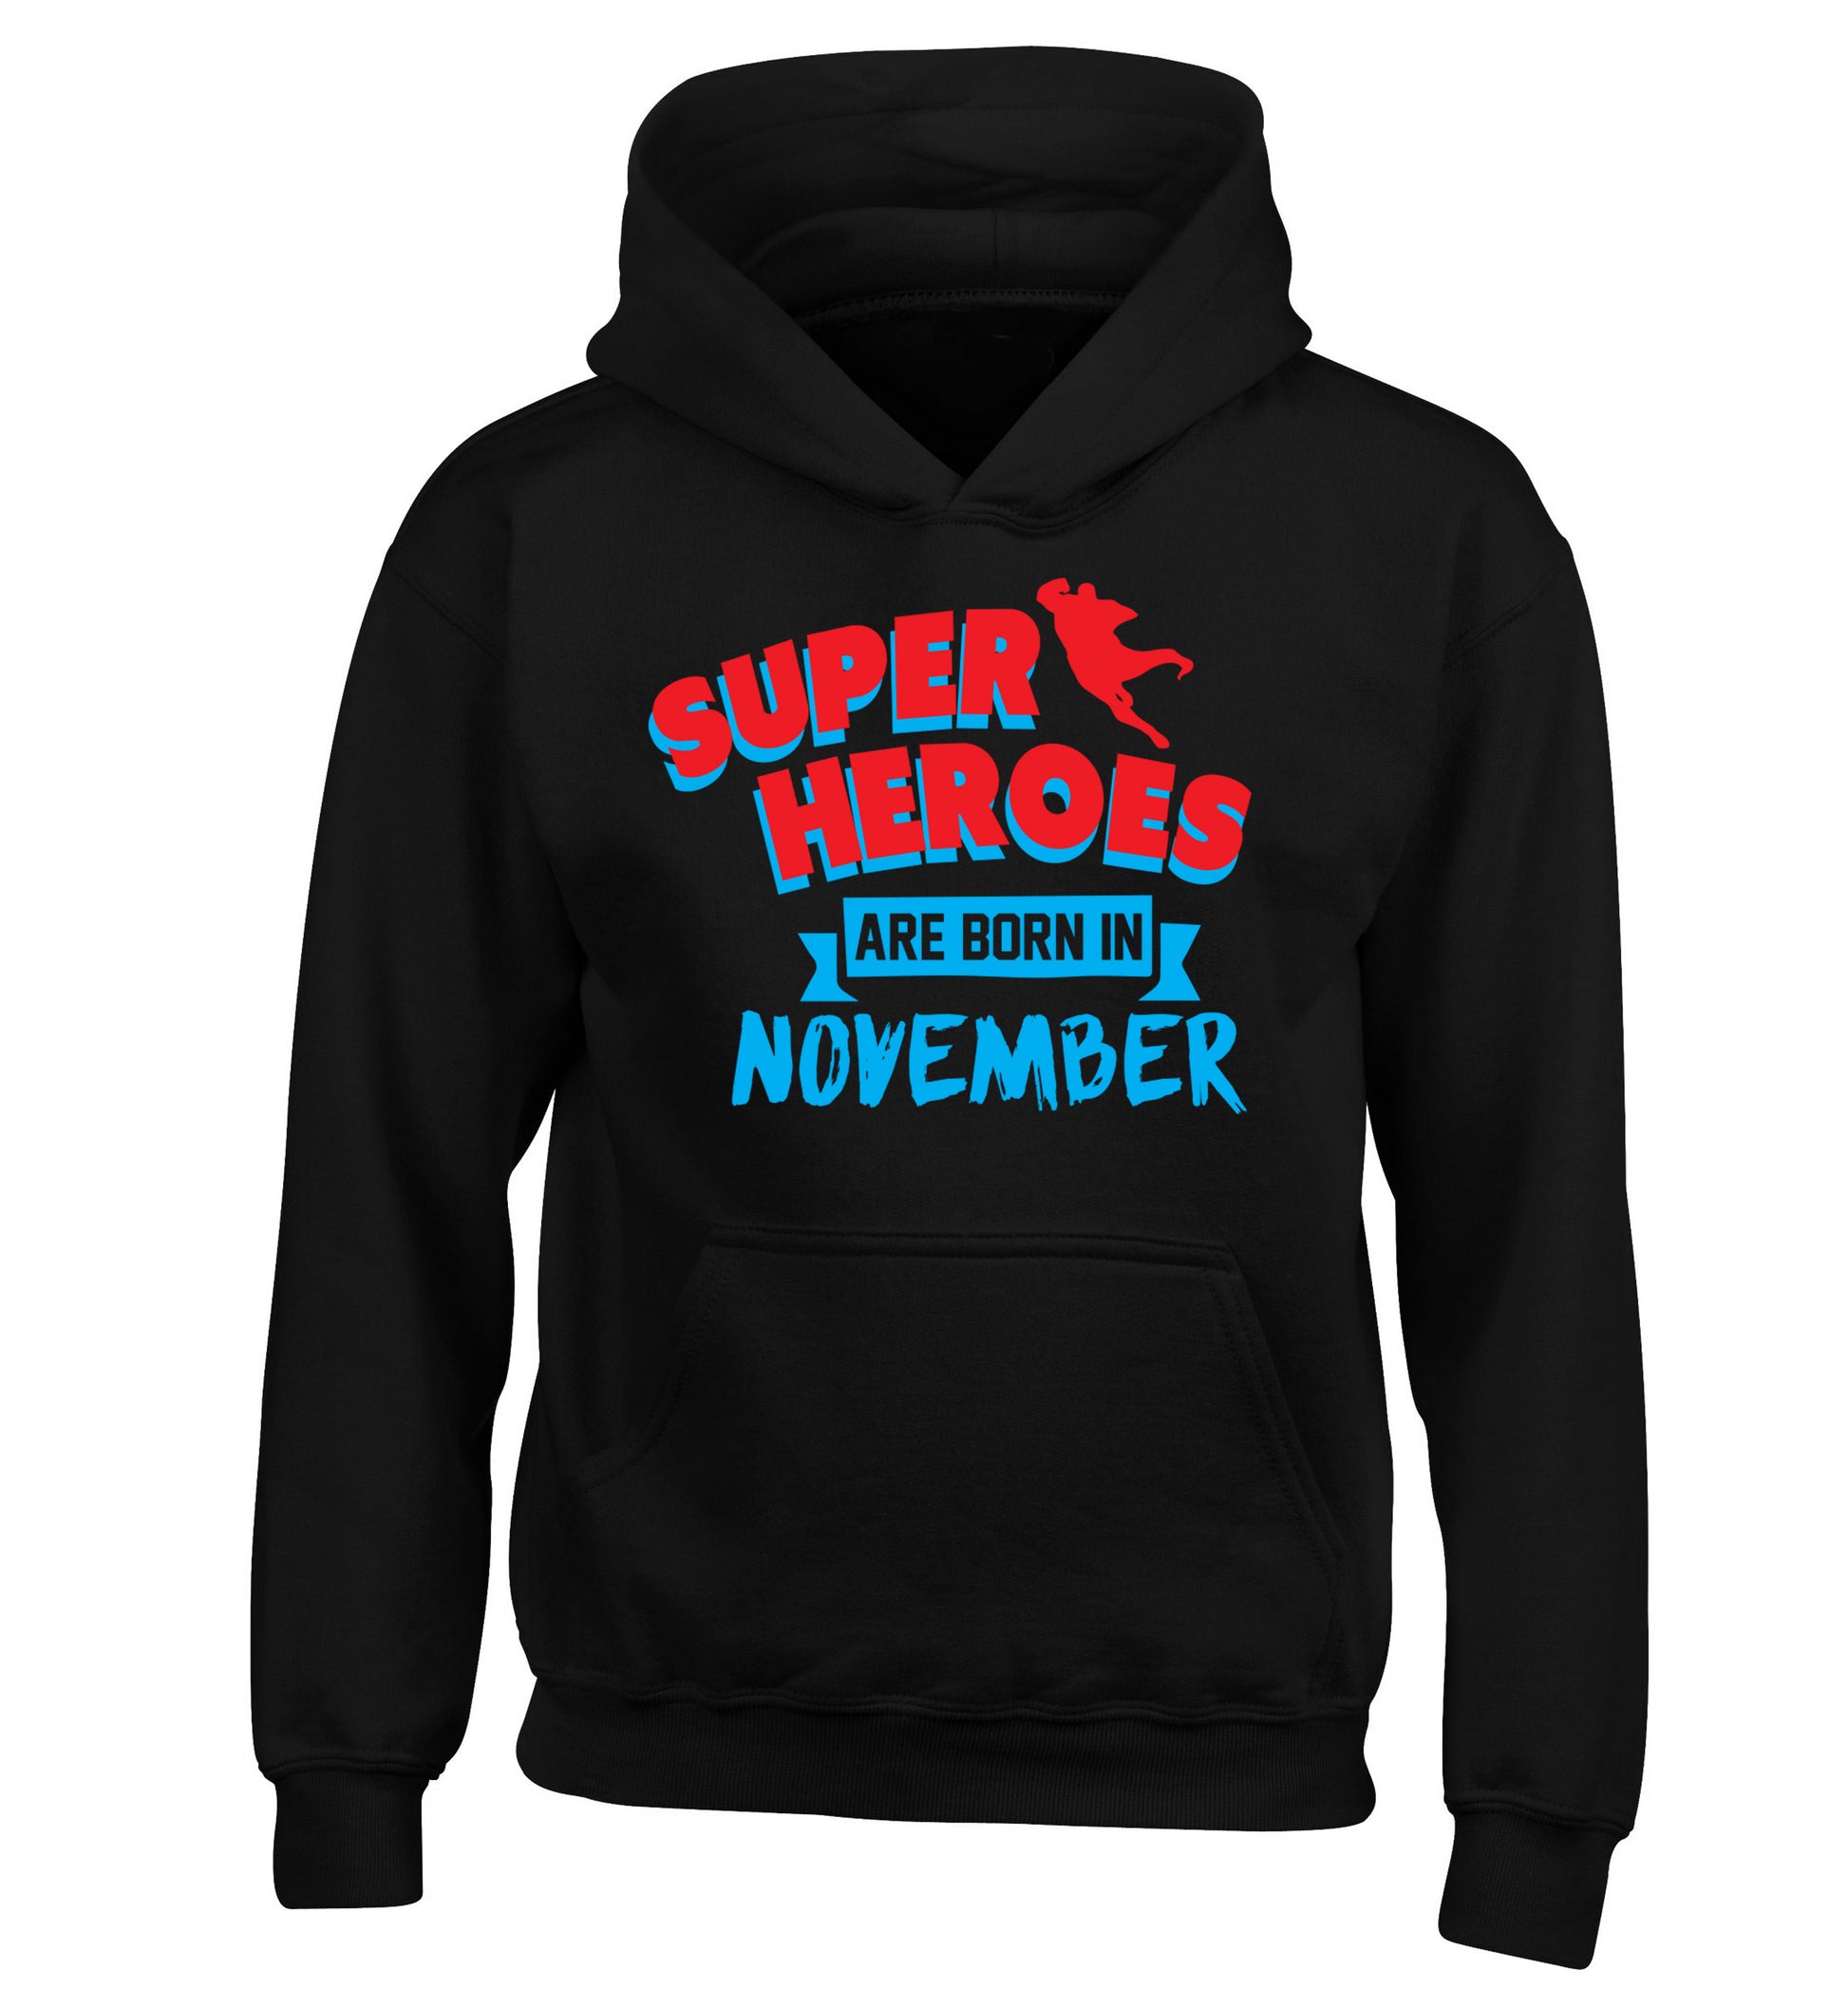 Superheroes are born in November children's black hoodie 12-13 Years